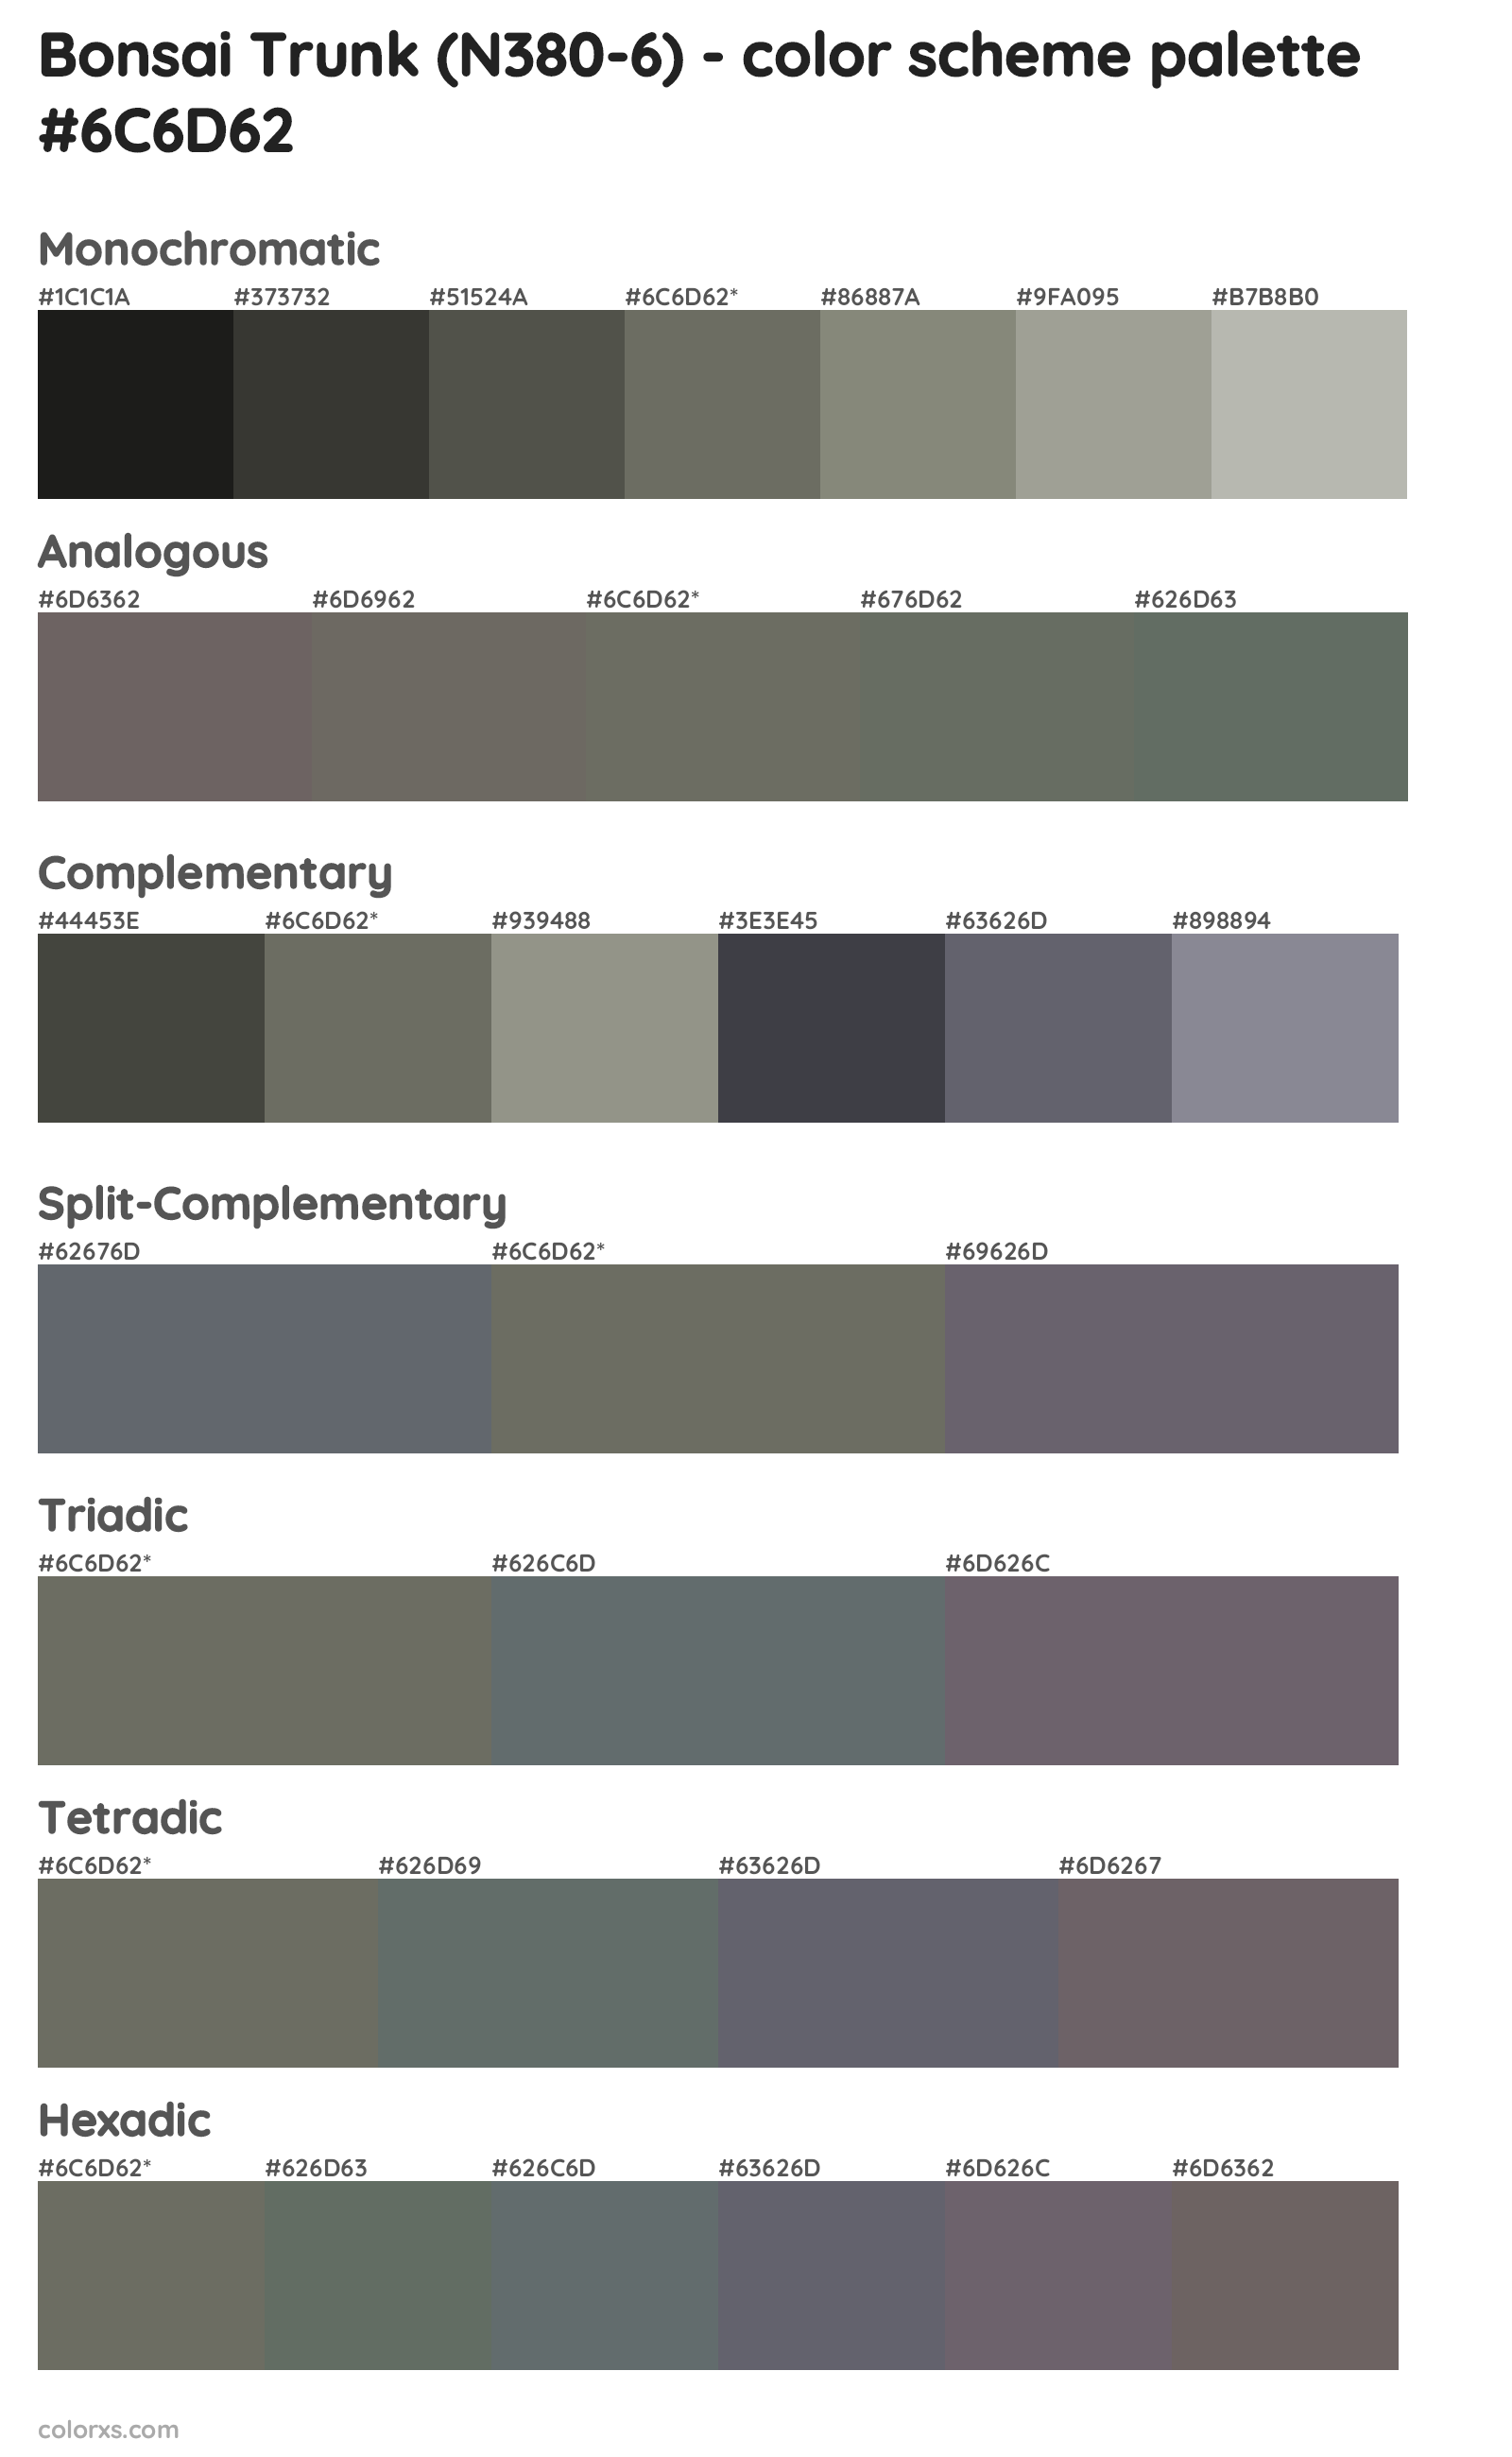 Bonsai Trunk (N380-6) Color Scheme Palettes